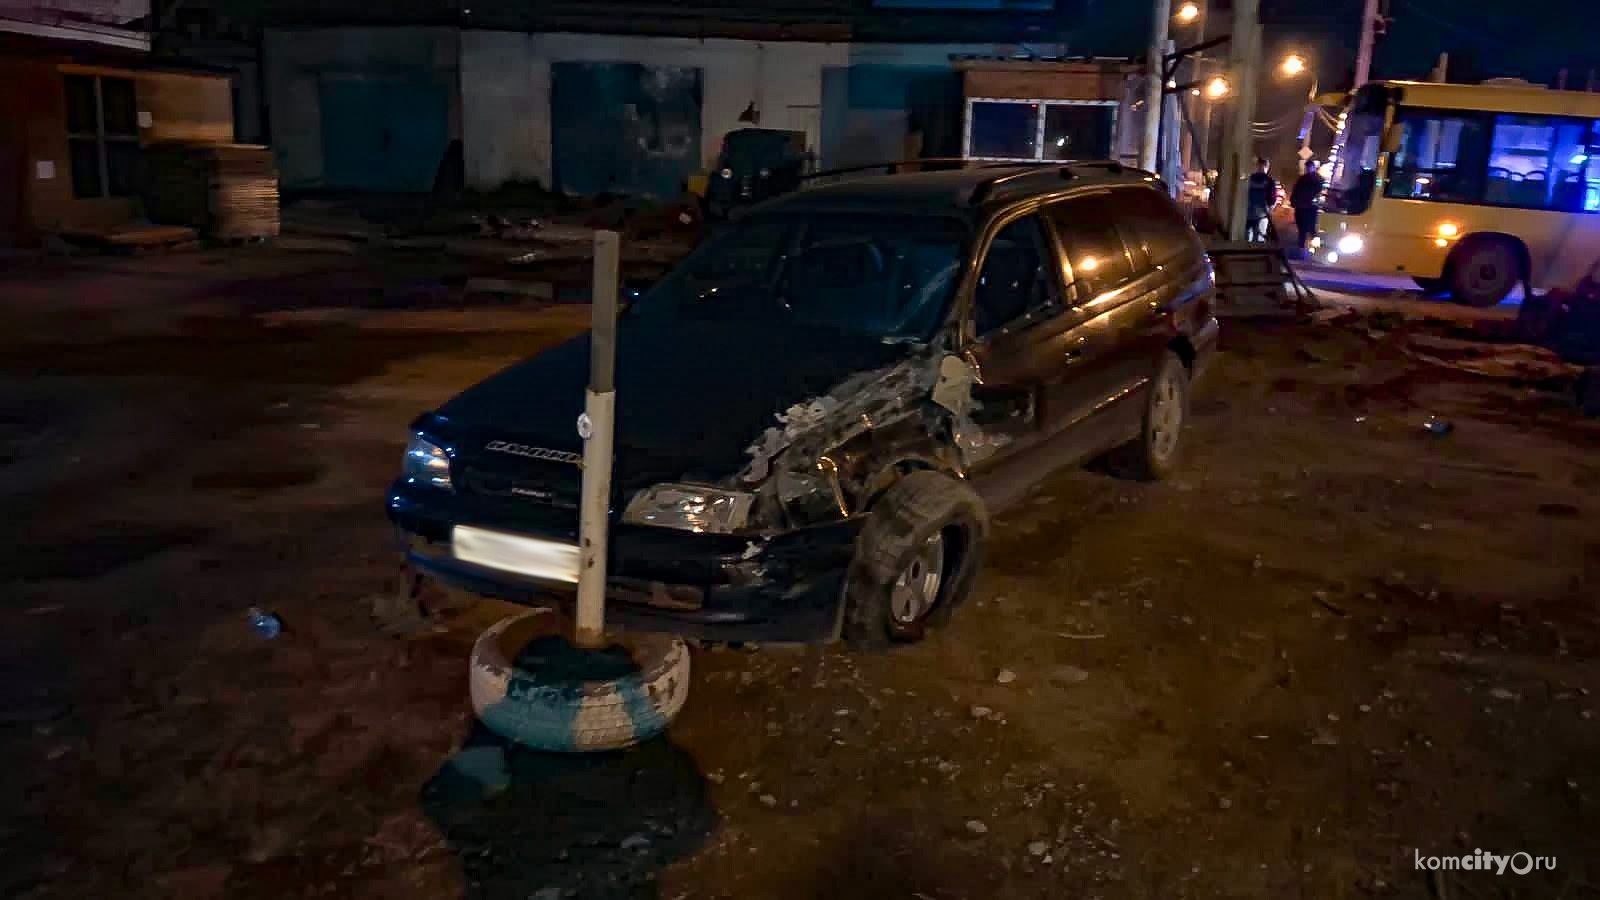 Подробности ДТП с машиной инкассации в Комсомольске-на-Амуре — на «пьяной дороге» не обошлось без пьяного